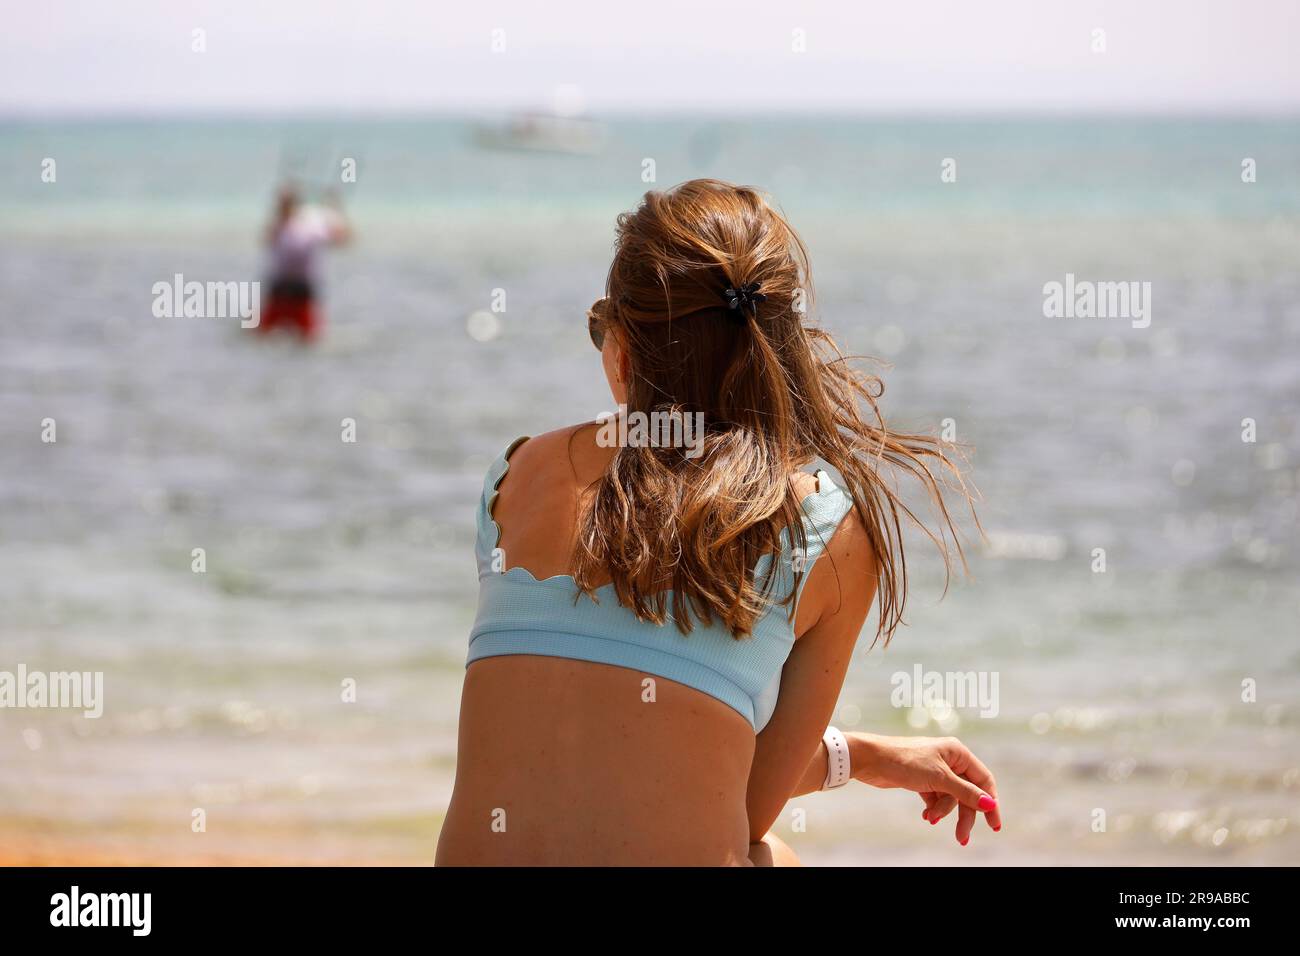 Ein Mädchen im Badeanzug sitzt am Strand und sieht einen Mann an, der Parasailing betreibt. Entspannung im Sommerresort Stockfoto